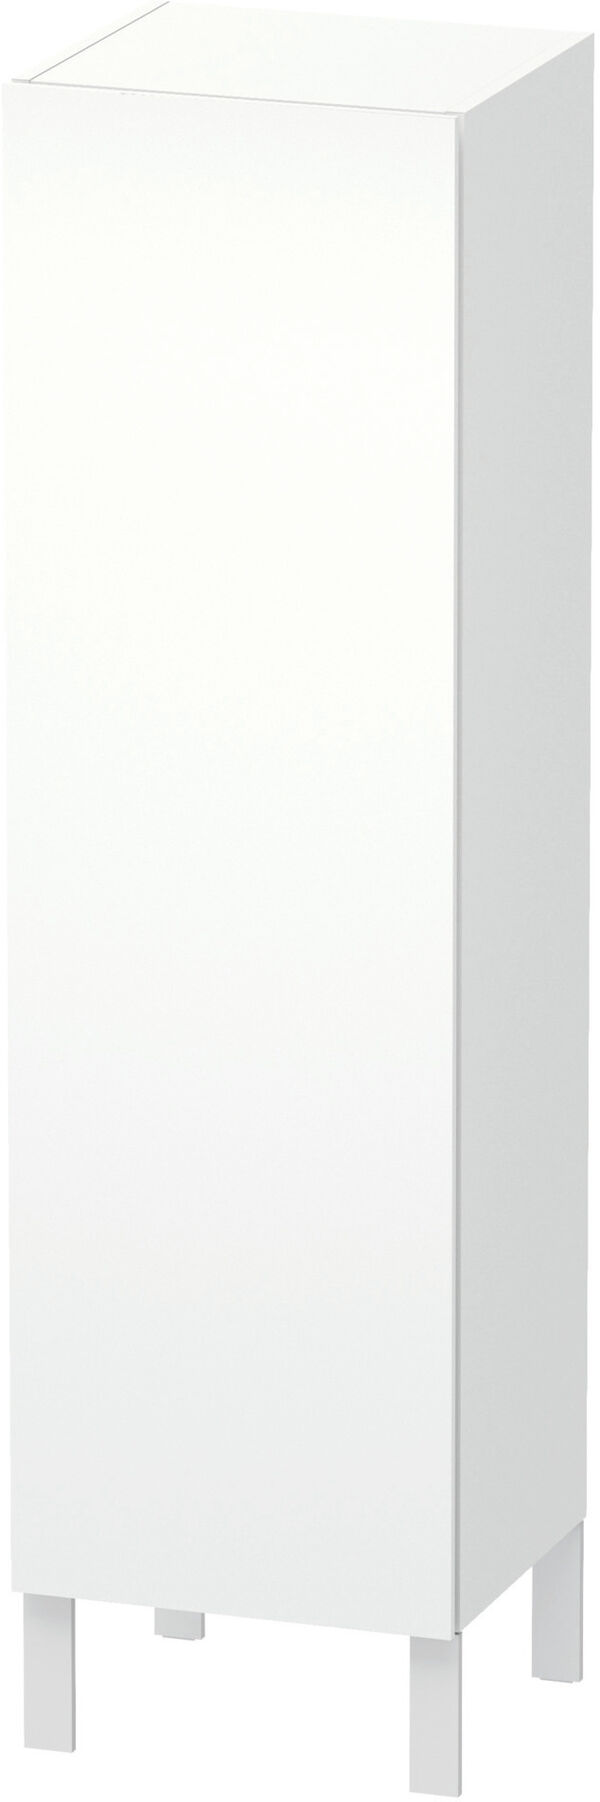 Armadietto laterale L-Cube l:40 cm, a:132 cm, p:36,3 cm 1 porta, cerniere 3 ripiani in vetro image number 0